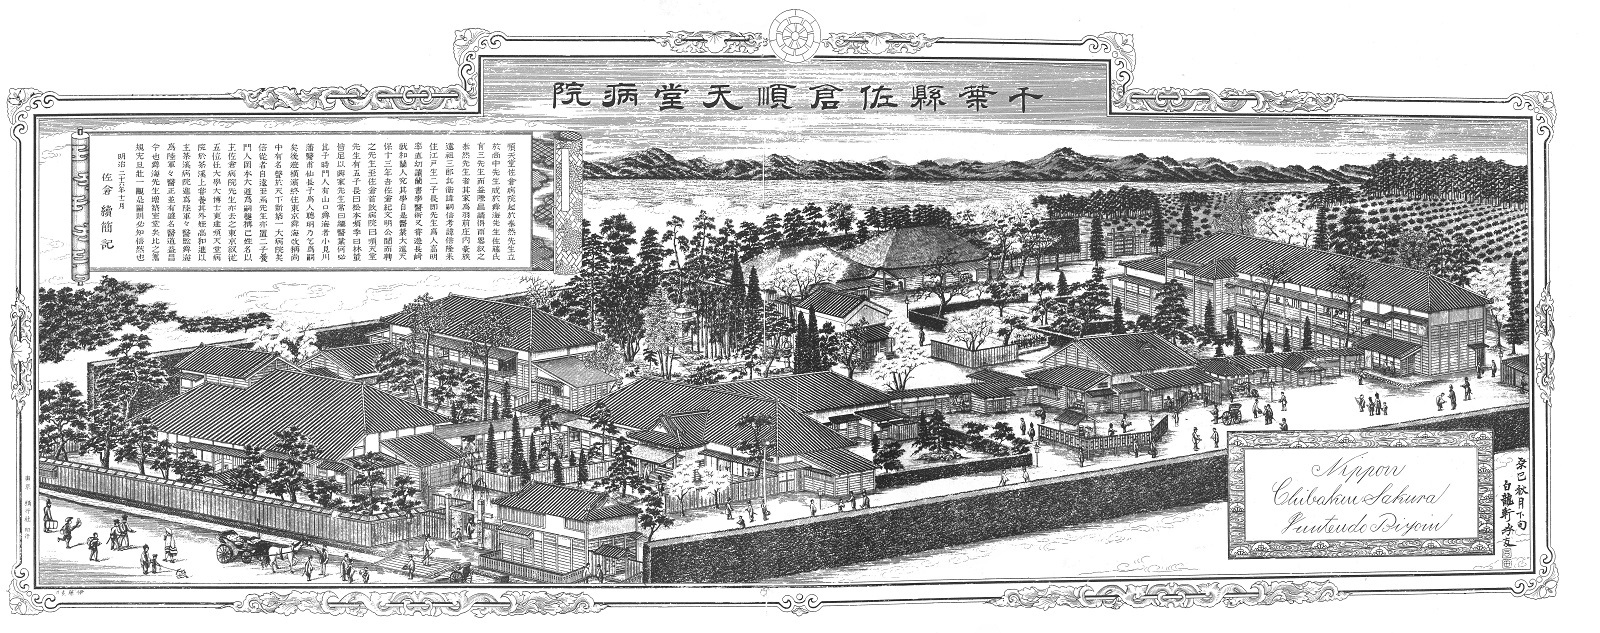 佐倉順天堂病院銅版画を写した写真